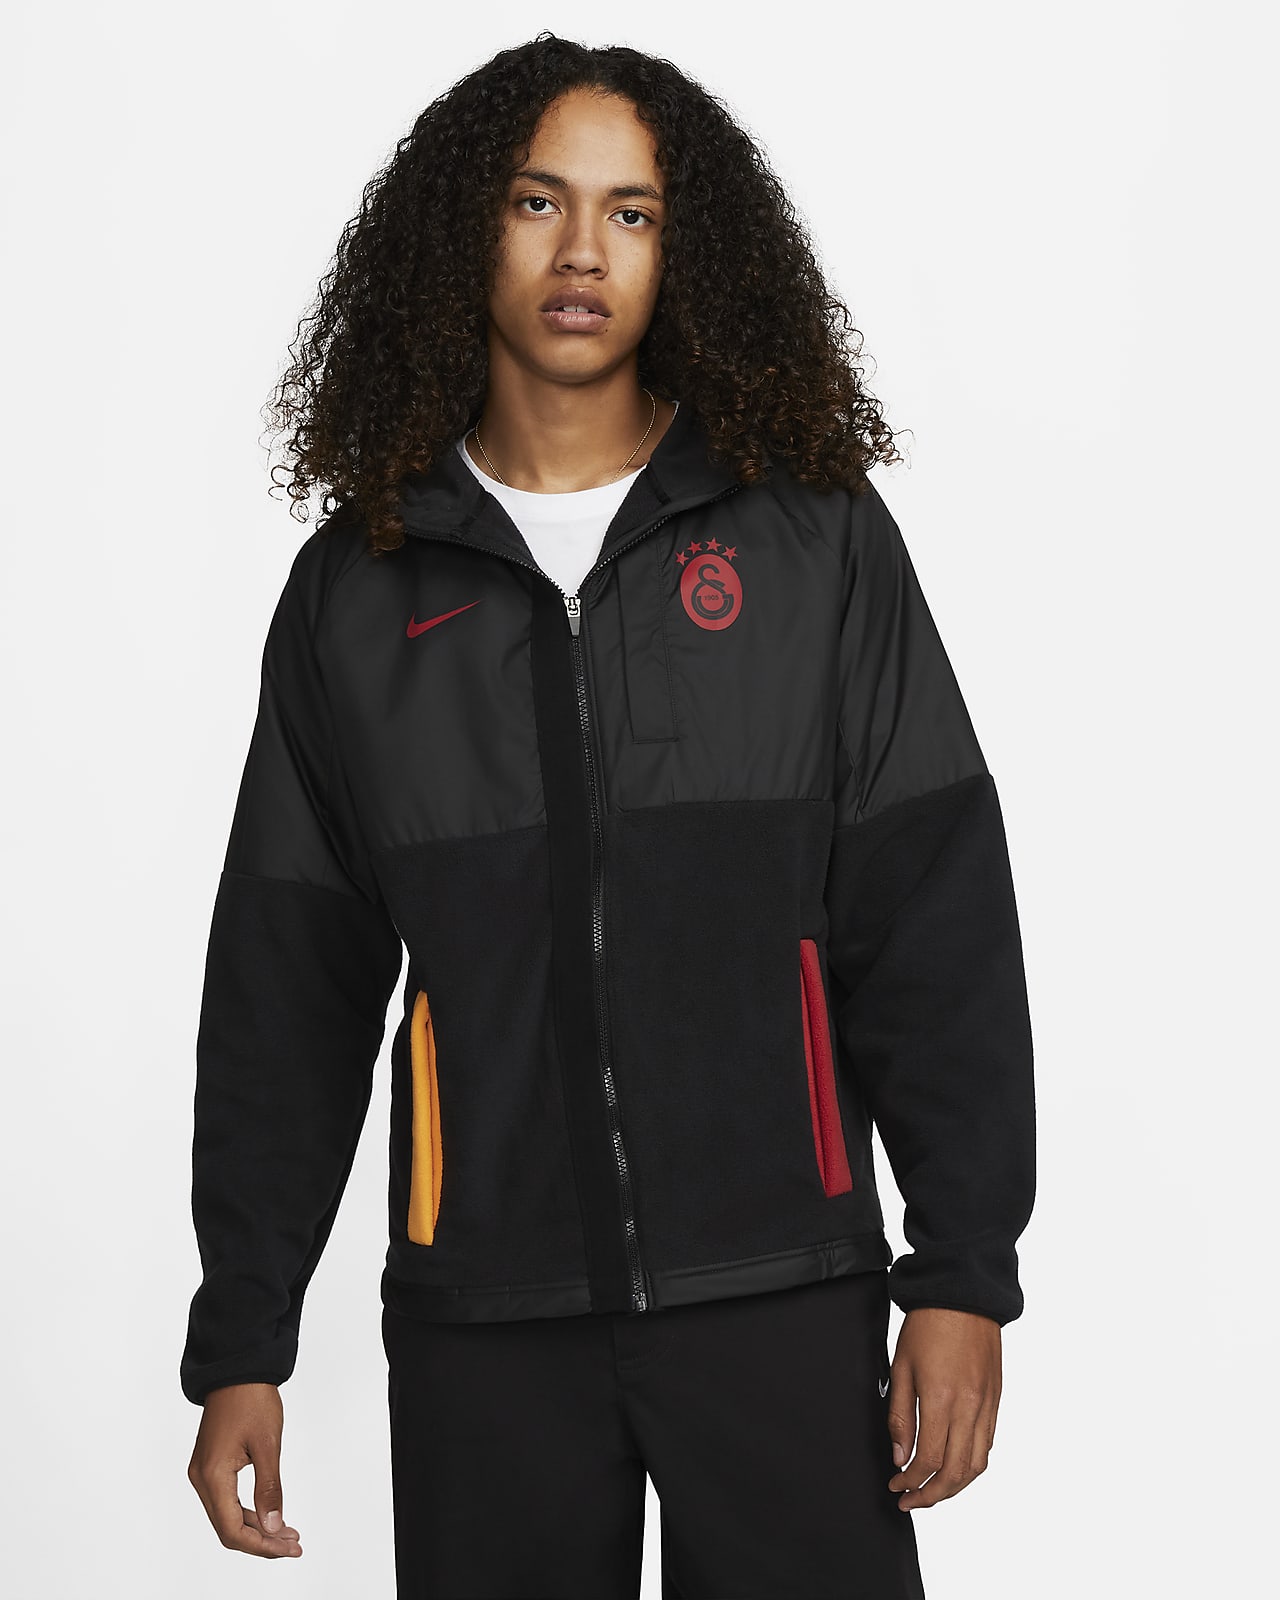 Galatasaray SK AWF Men's Winterized Full-Zip Football Jacket. Nike NZ